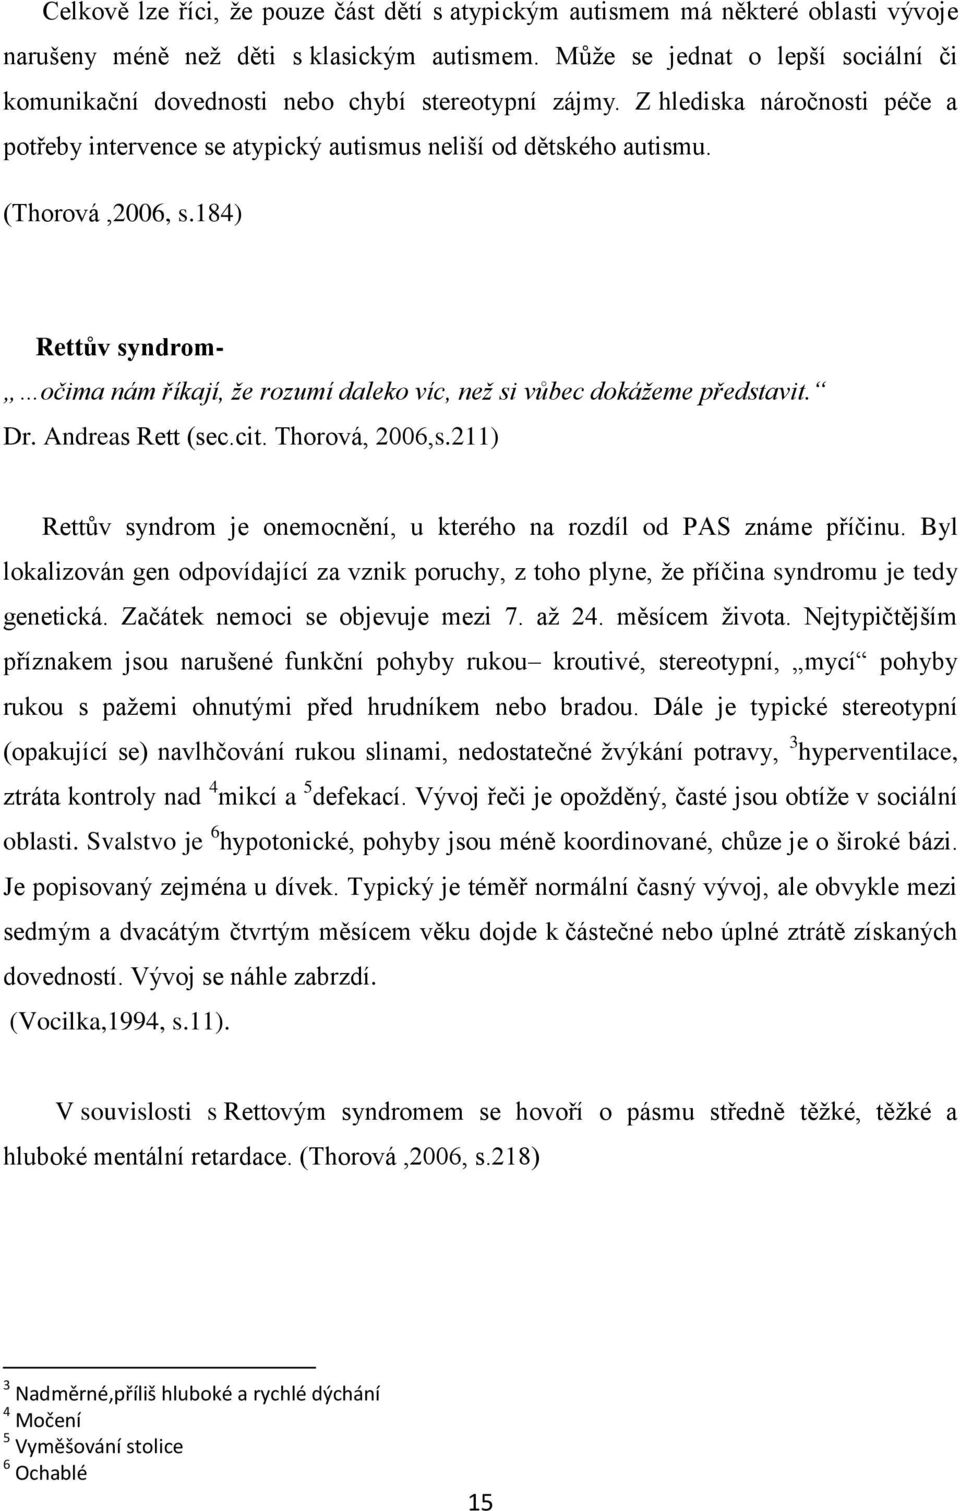 (Thorová,2006, s.184) Rettův syndrom- očima nám říkají, že rozumí daleko víc, než si vůbec dokážeme představit. Dr. Andreas Rett (sec.cit. Thorová, 2006,s.